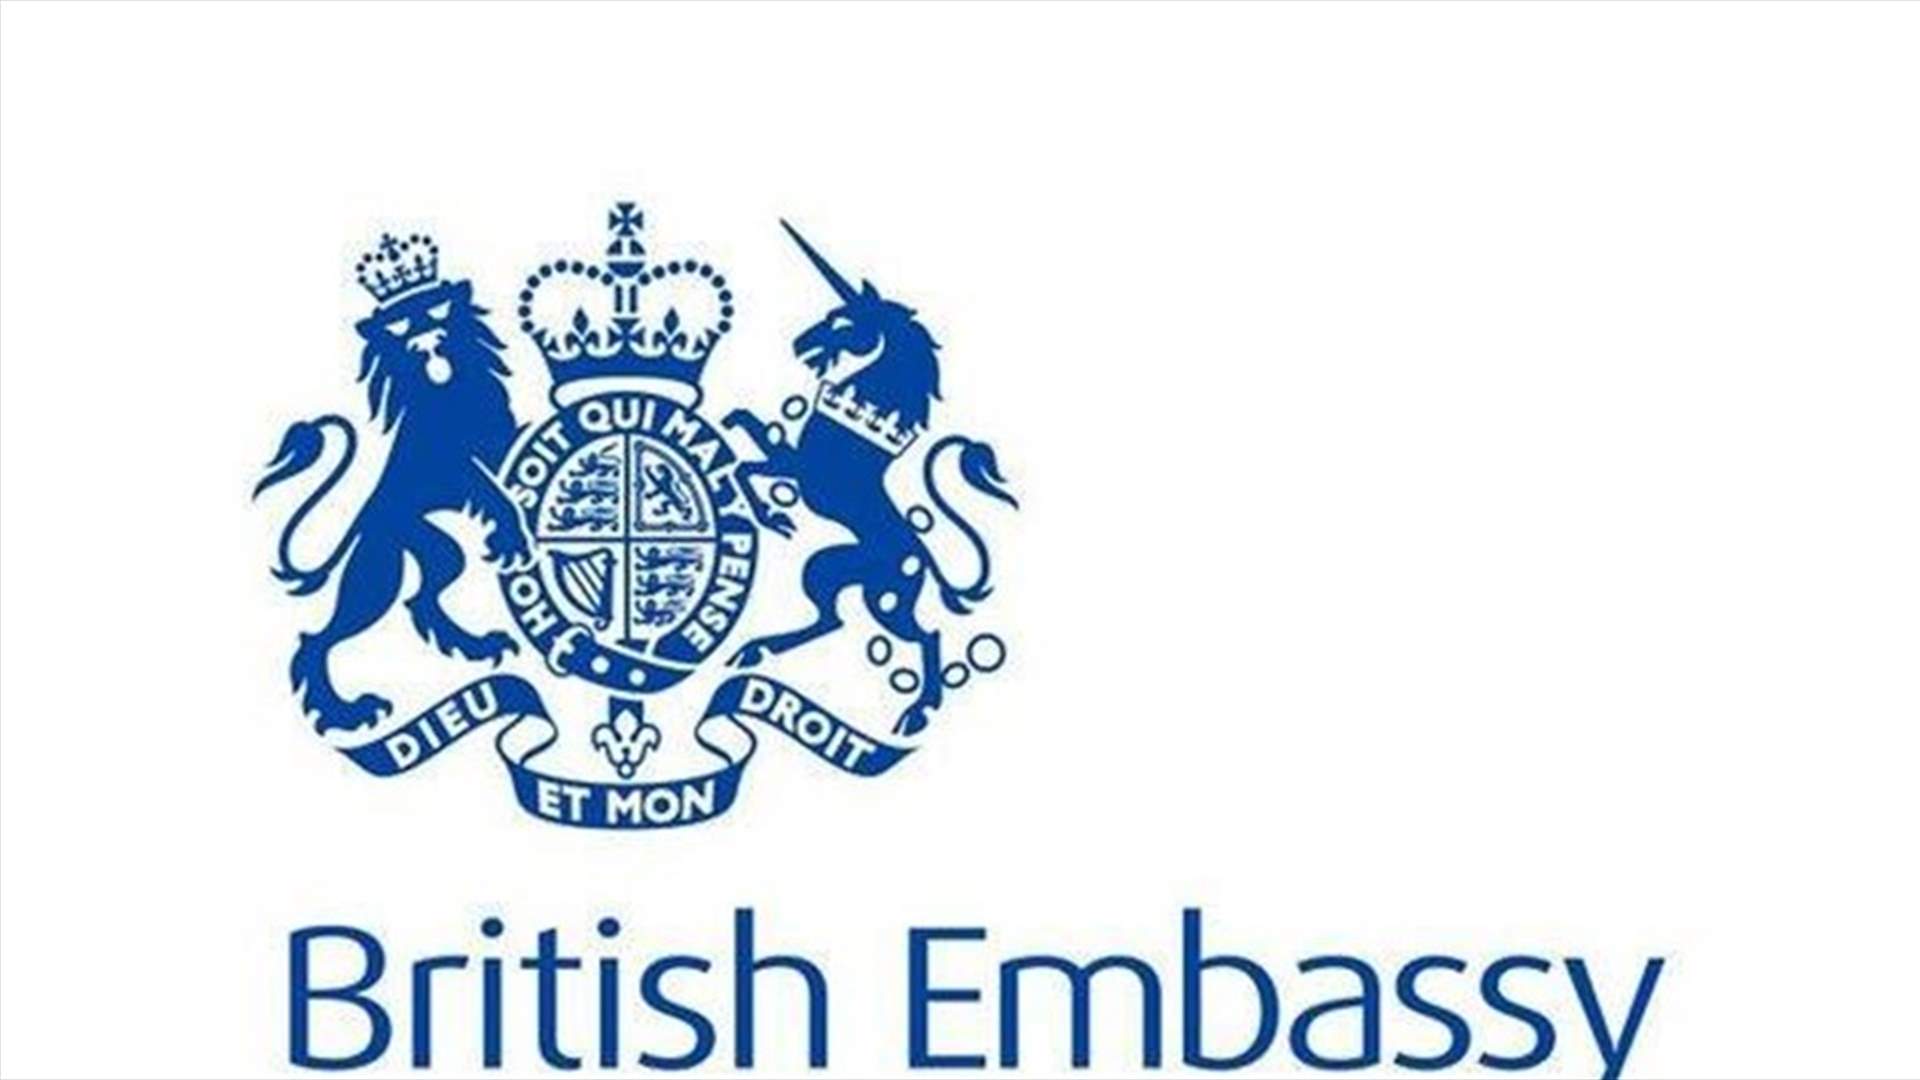 المملكة المتحدة ترسل مساعدات طارئة إلى لبنان: 5 ملايين جنيه إسترليني من المعونات لمن تضررت بيوتهم